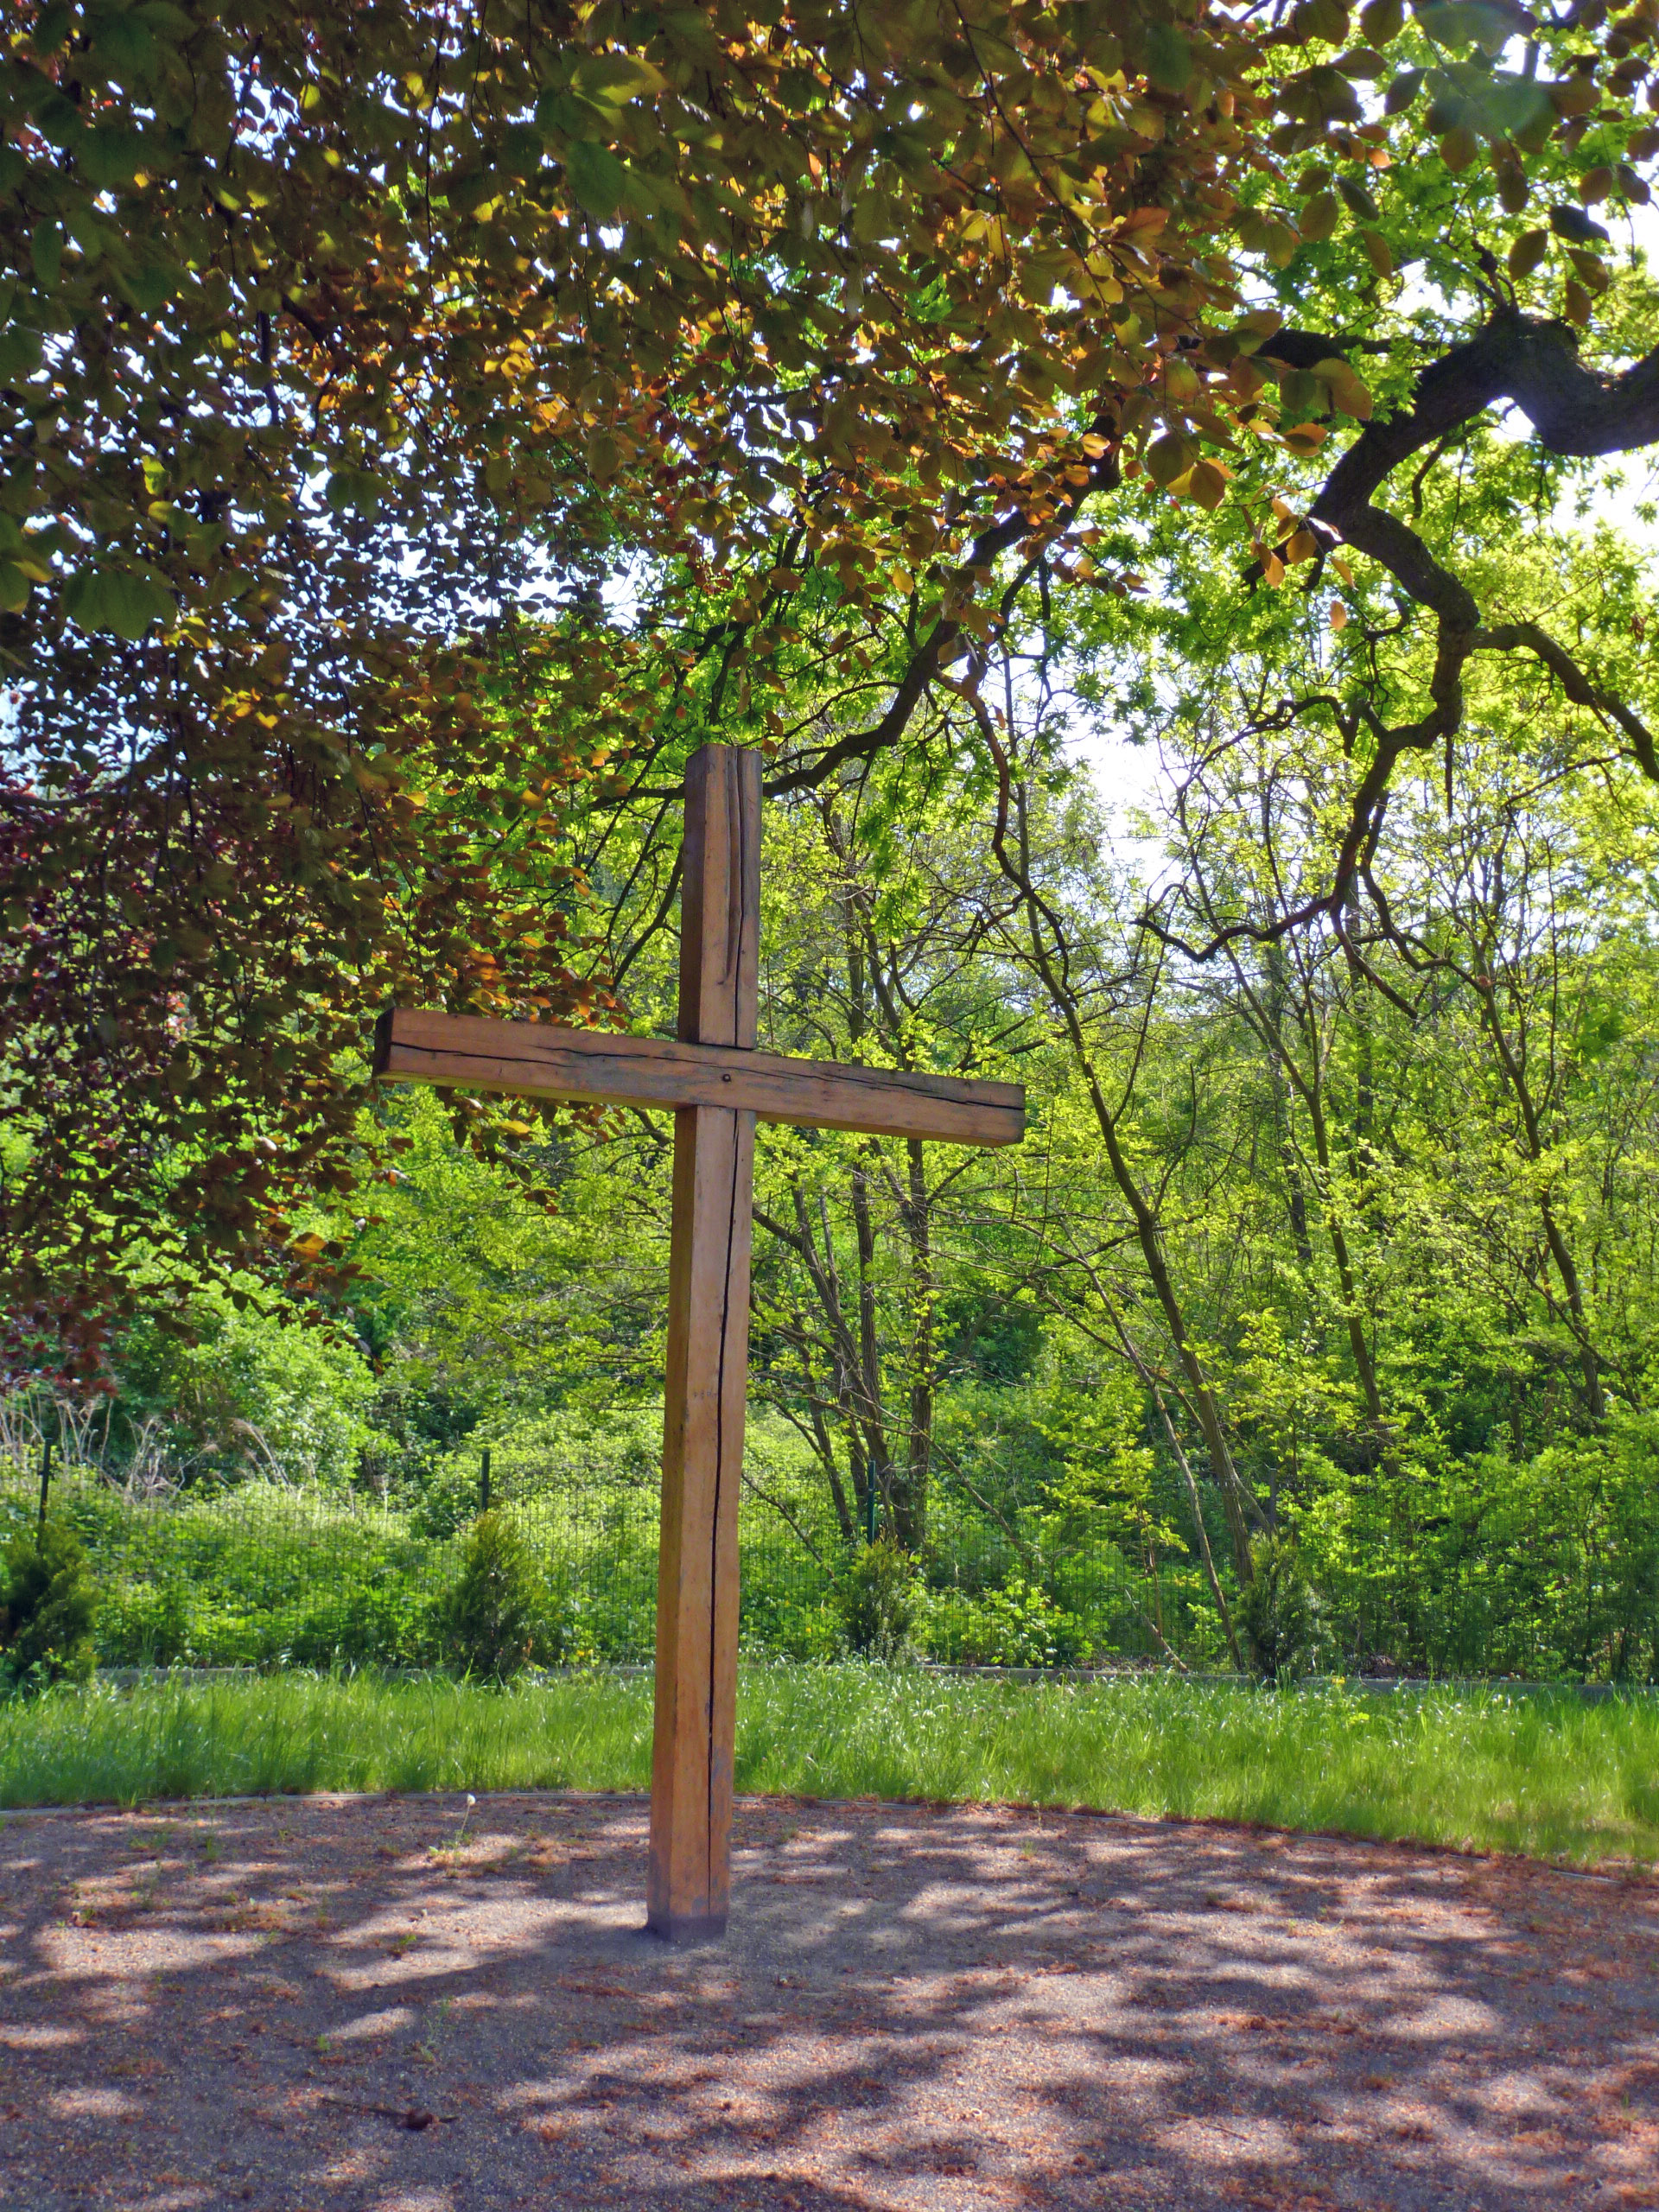  Dietrich Bonhoeffers Garten der Stille und der Meditation in Finkenwalde